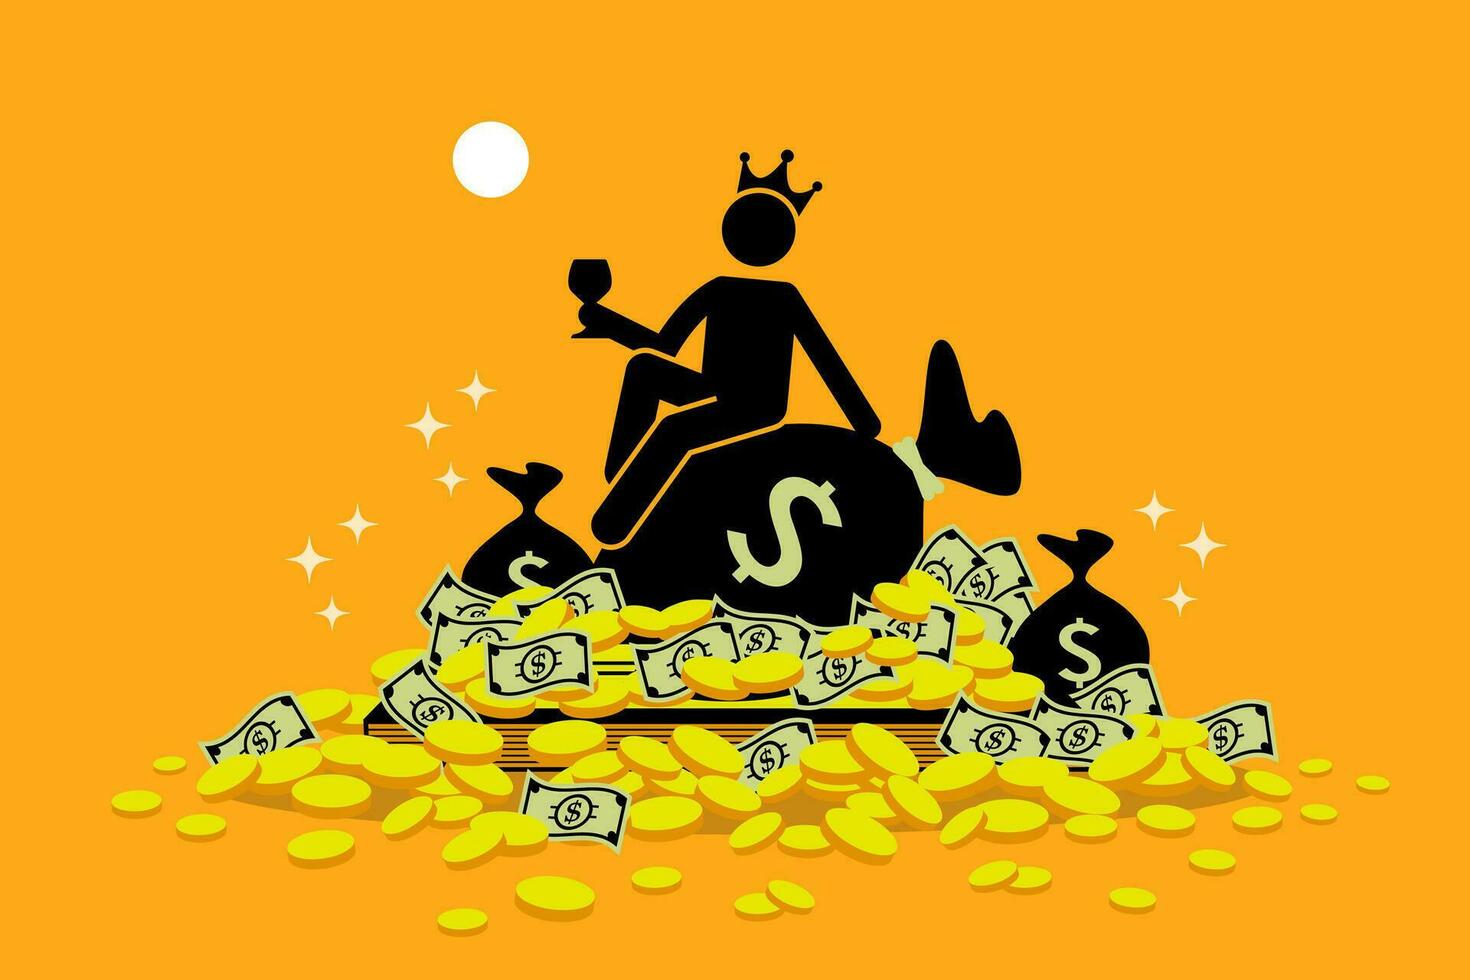 homme portant une couronne séance sur une pile de argent et or pièces de monnaie. vecteur des illustrations agrafe art dépeint concept de riche, richesse, héritage, chanceux, fortune, Trésor trésor, et extravagant.